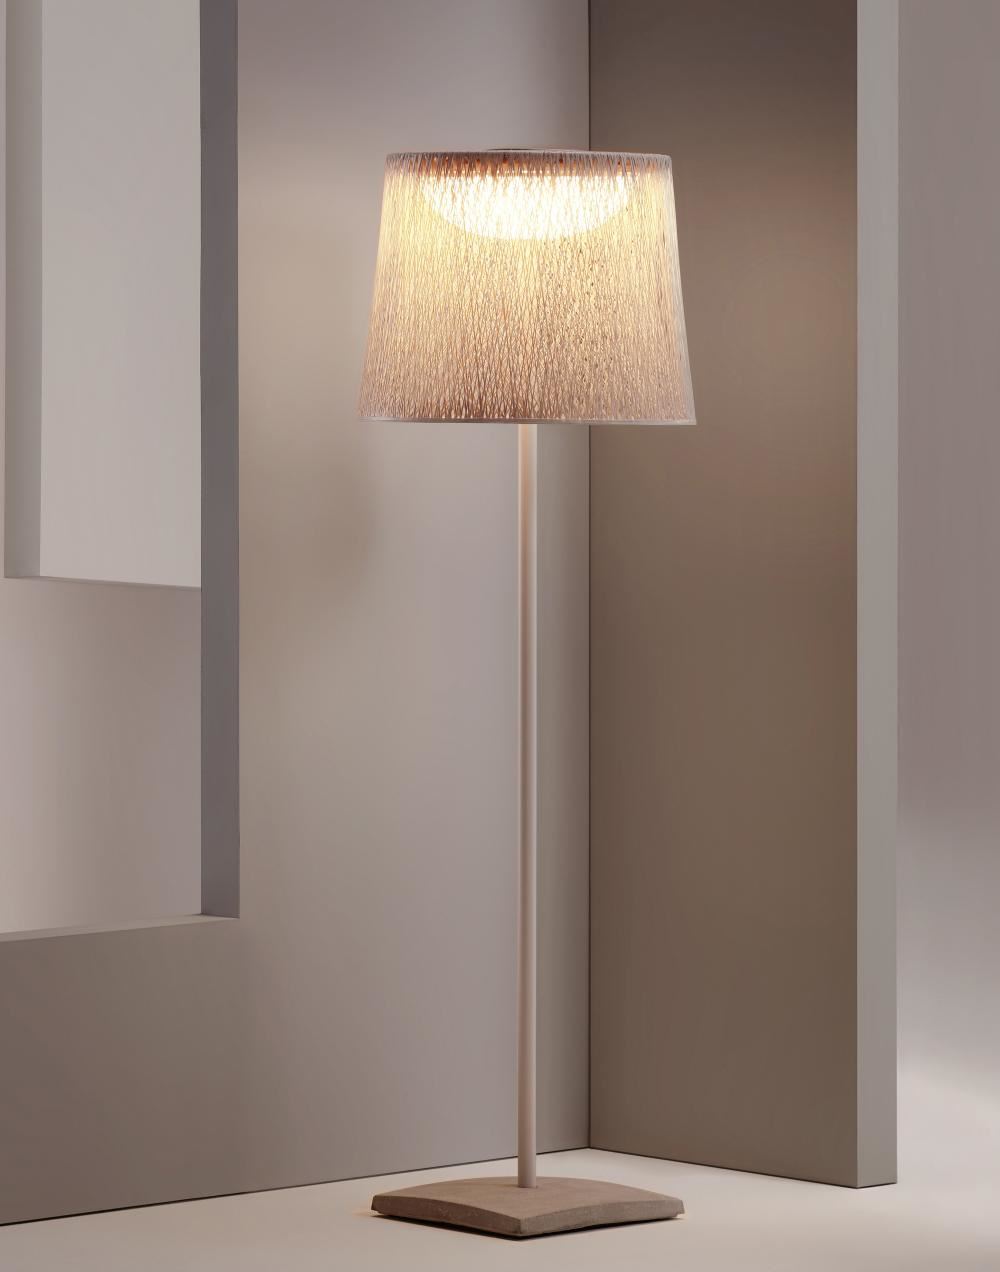 Vibia Wind Outdoor Floor Light 4067 Brown Outdoor Lighting Outdoor Lighting Designer Floor Lamp